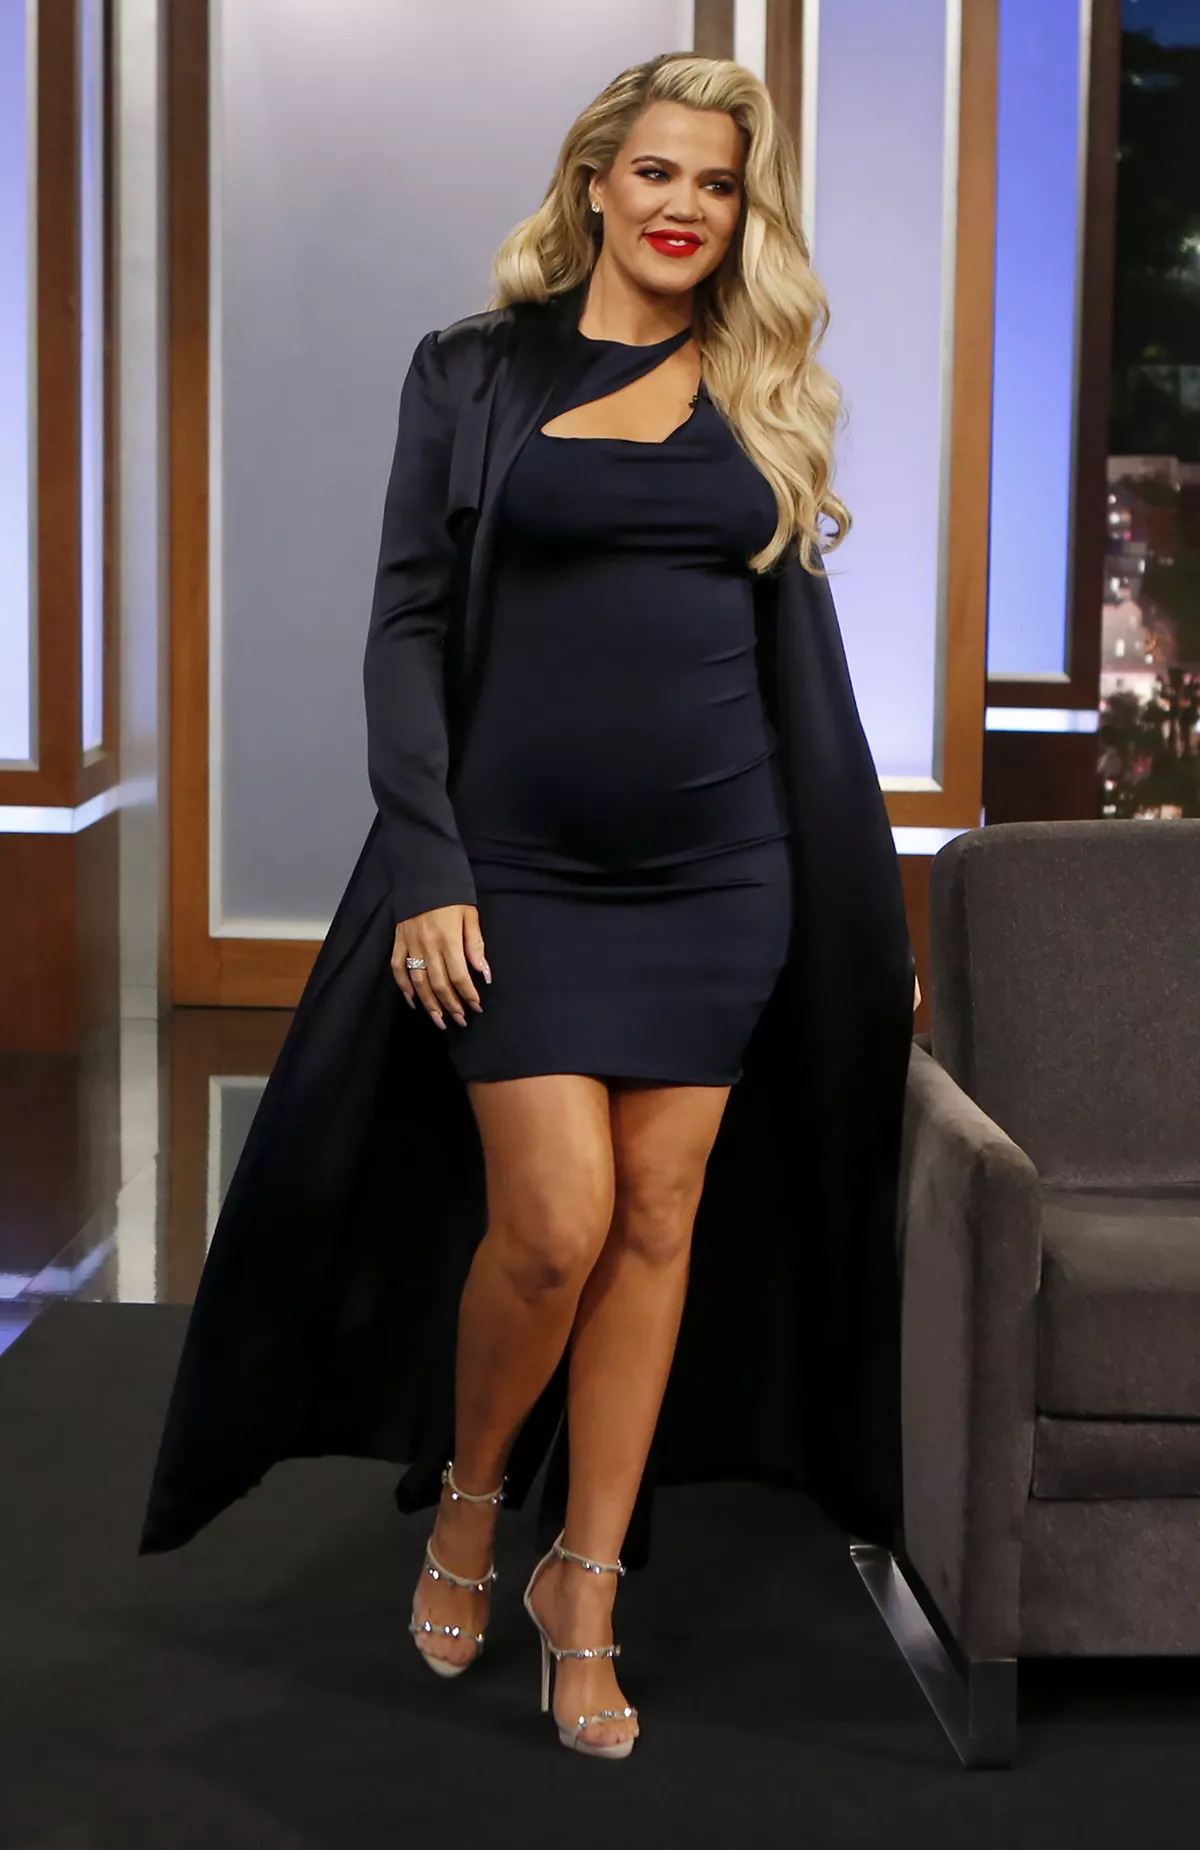 Khloé Kardashian pregnancy reflection